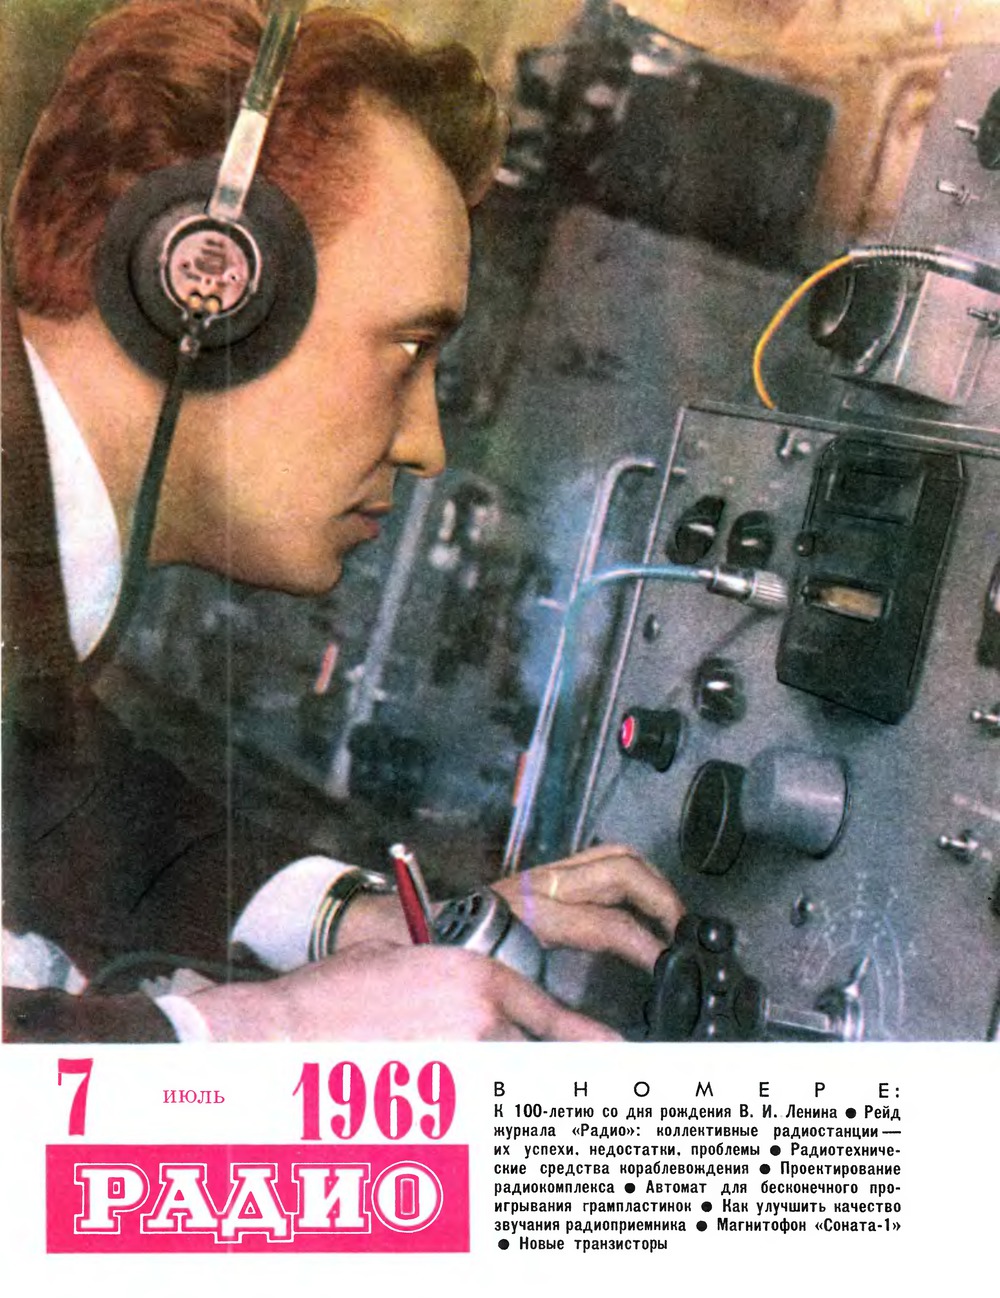 Радио 1960. Журнал радио. Обложка журнала радио. Советский журнал радио. Советские радиолюбители.